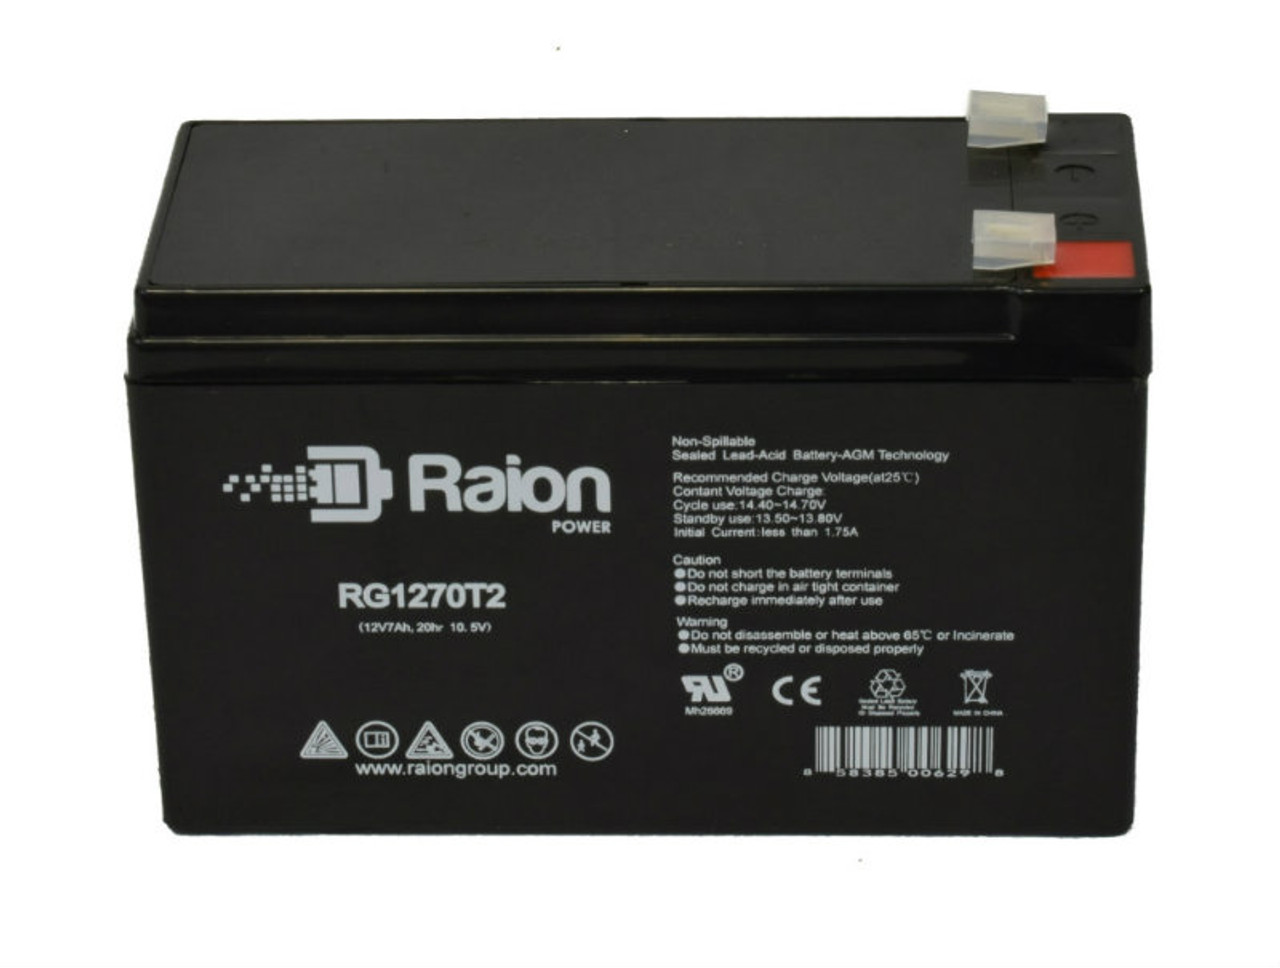 Raion Power RG1270T1 12V 7Ah Lead Acid Battery for Cybex 771A Arc Trainer